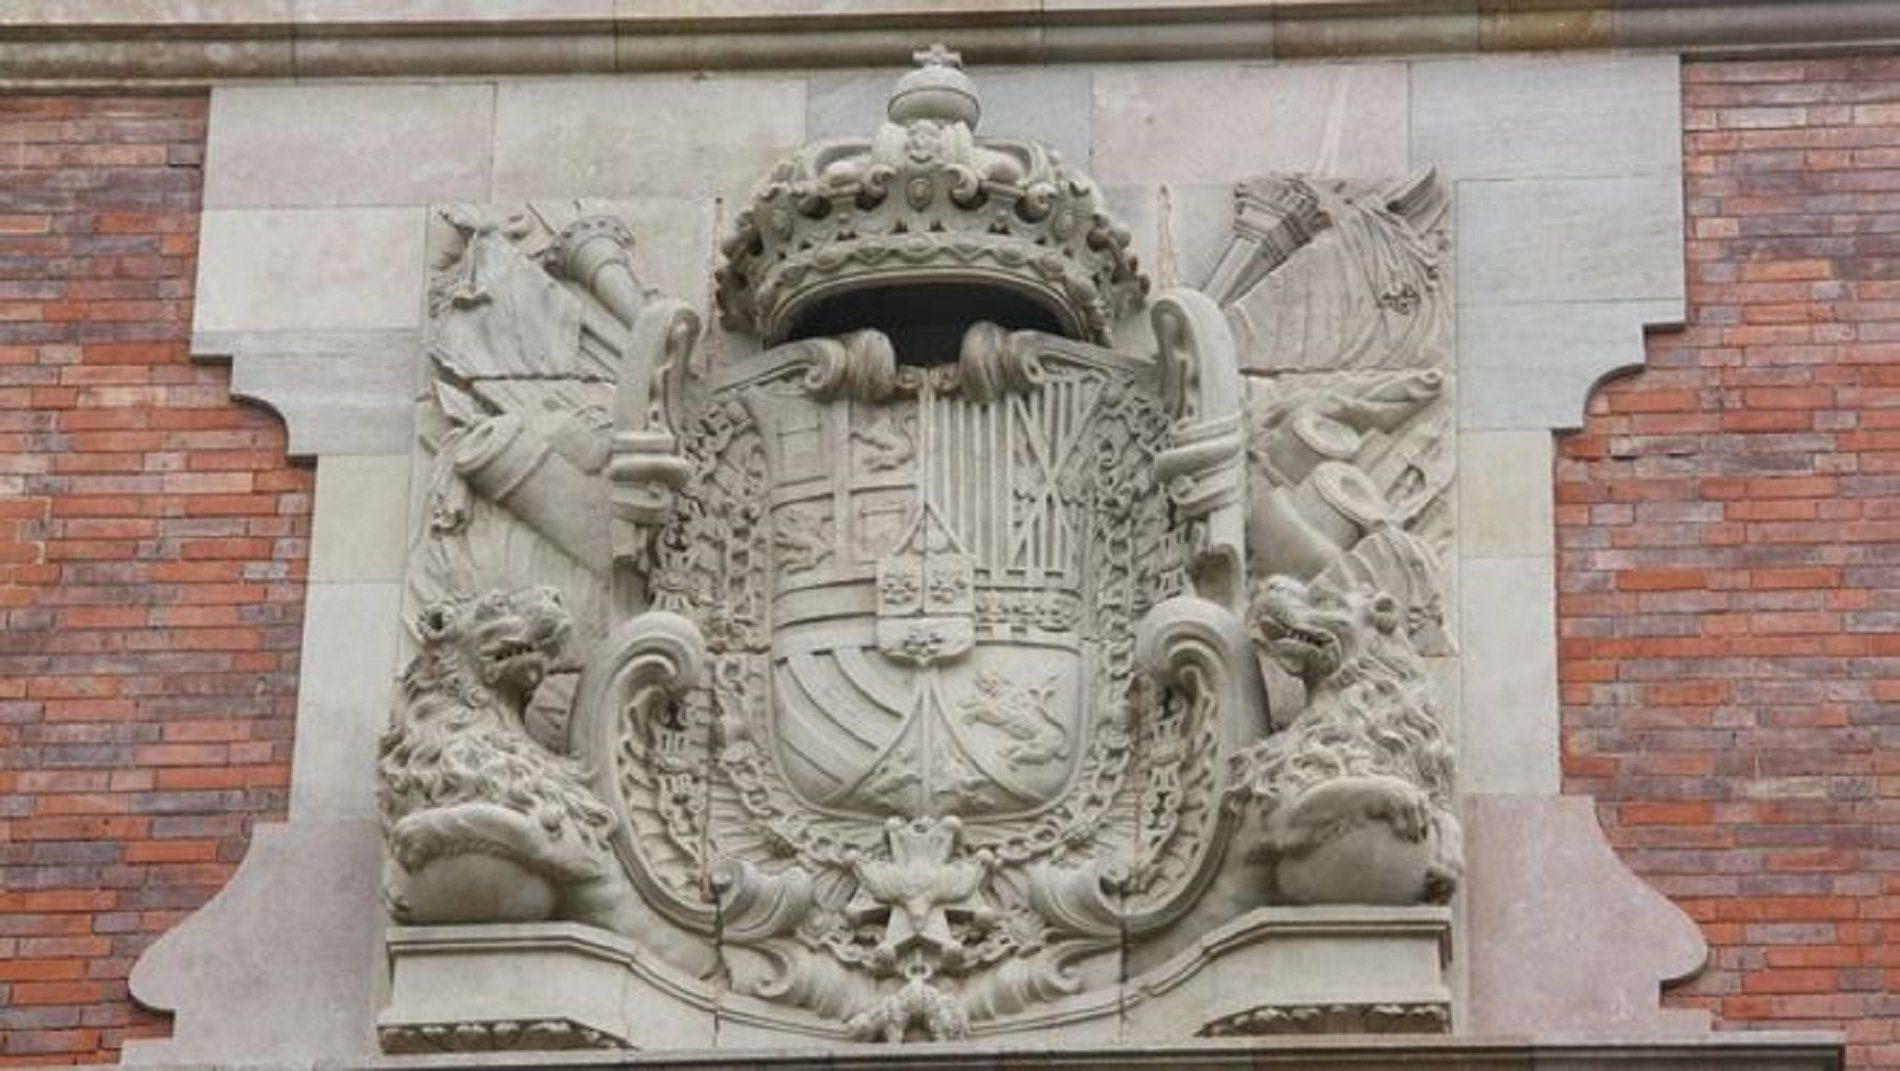 És veritat que han destrossat l’escut de Felip V de la façana del Parlament?